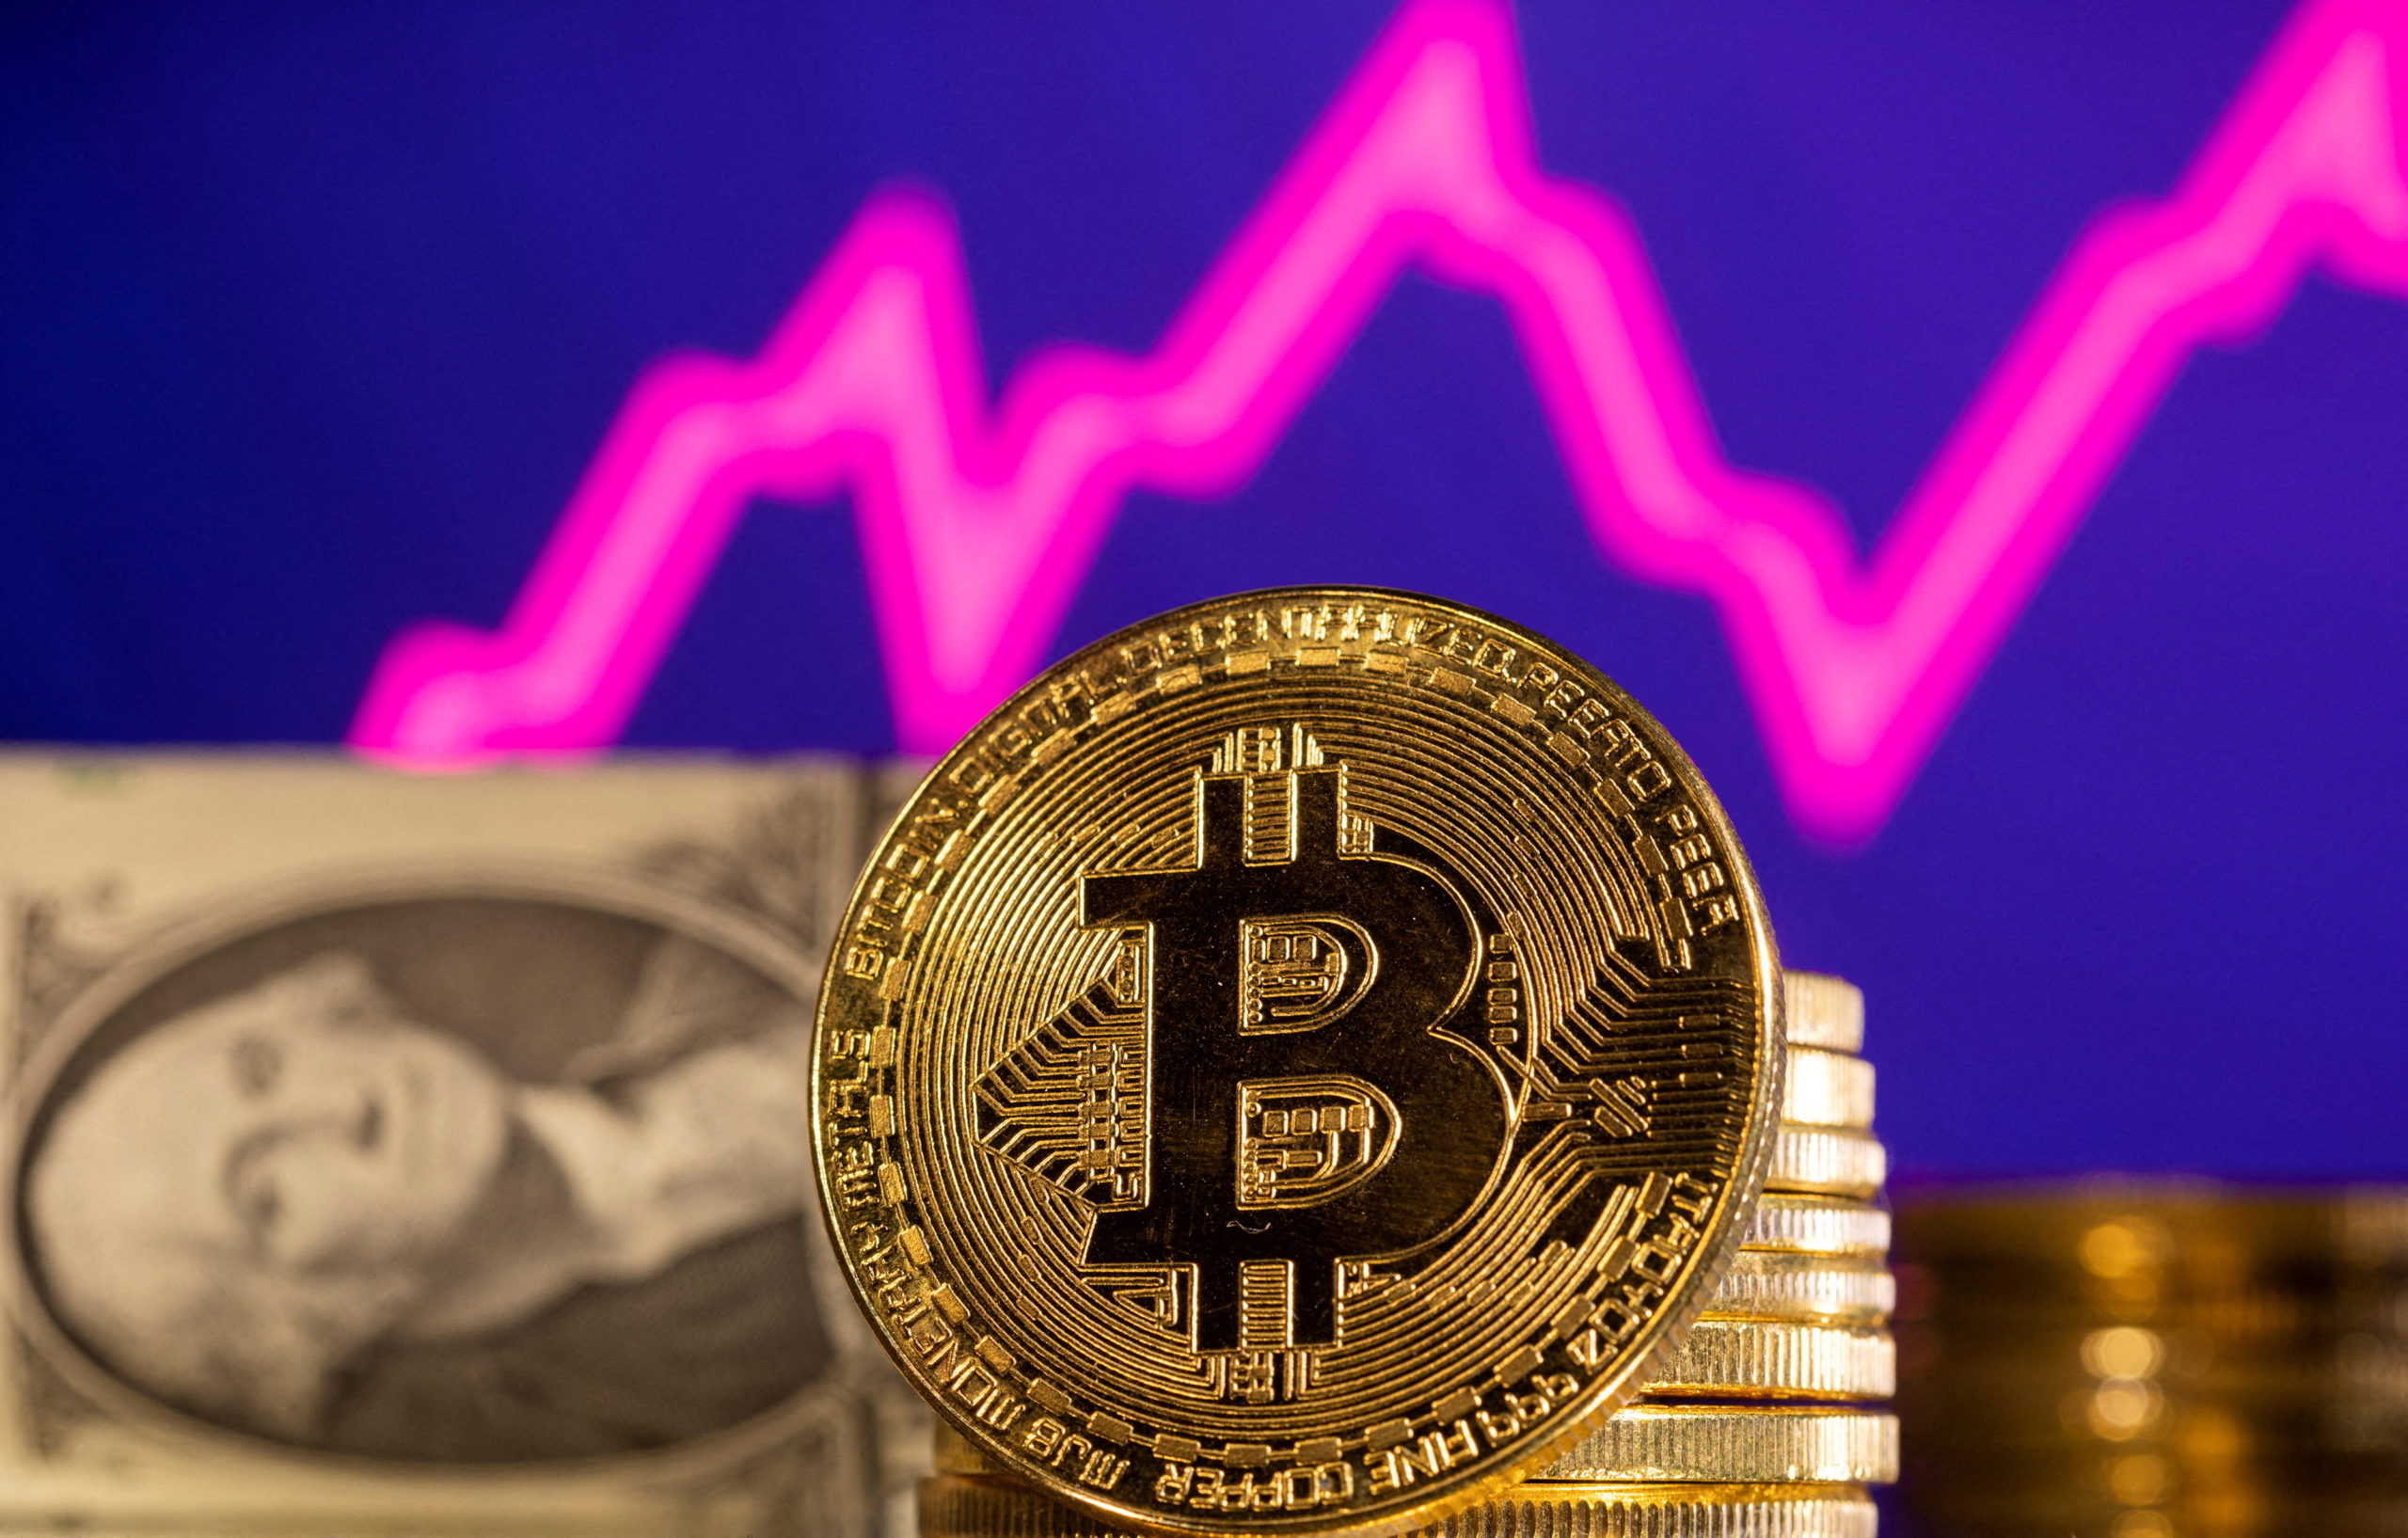 Pablo Motos Bitcoin | 🥇 Ar tiesa, kad jis investavo į Bitcoin?